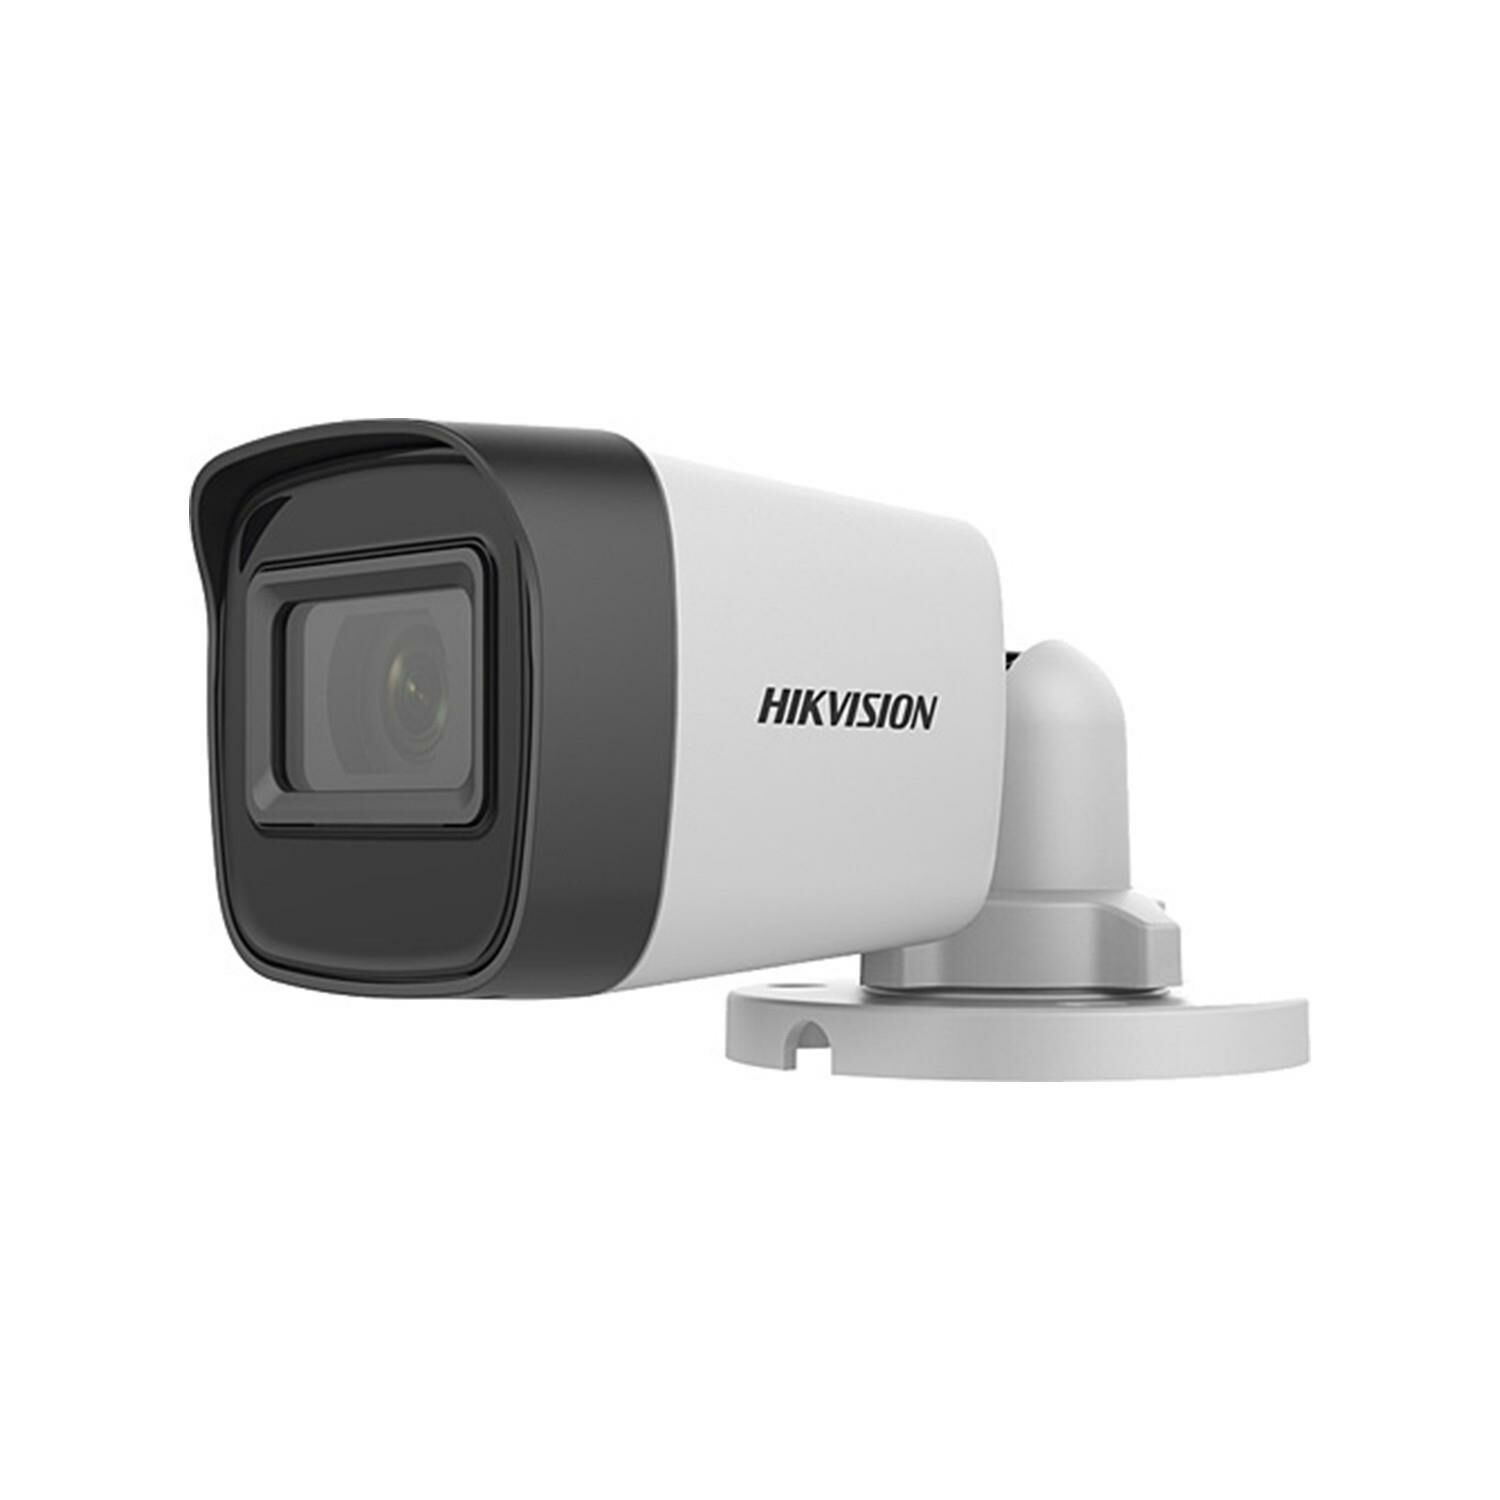 Hikvision DS-2CE16D0T-EXIF 2.0 Mp 2.8Mm Metal Kasa Hd-Tvi Bullet Kamera